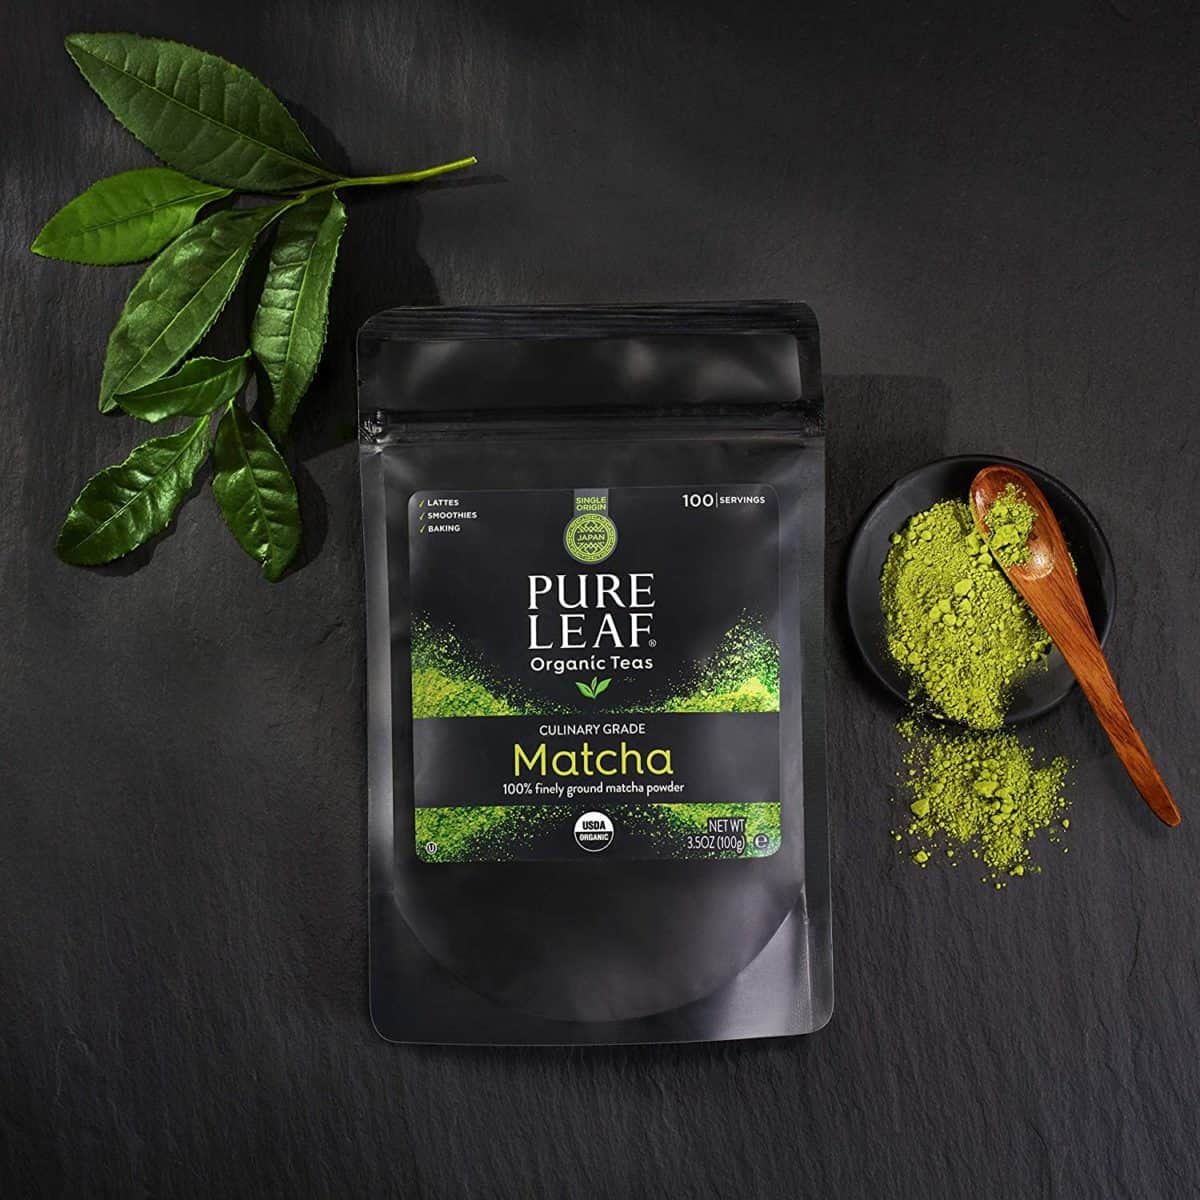 Pure leaf match té verde en polvo una de las mejores marcas de matcha